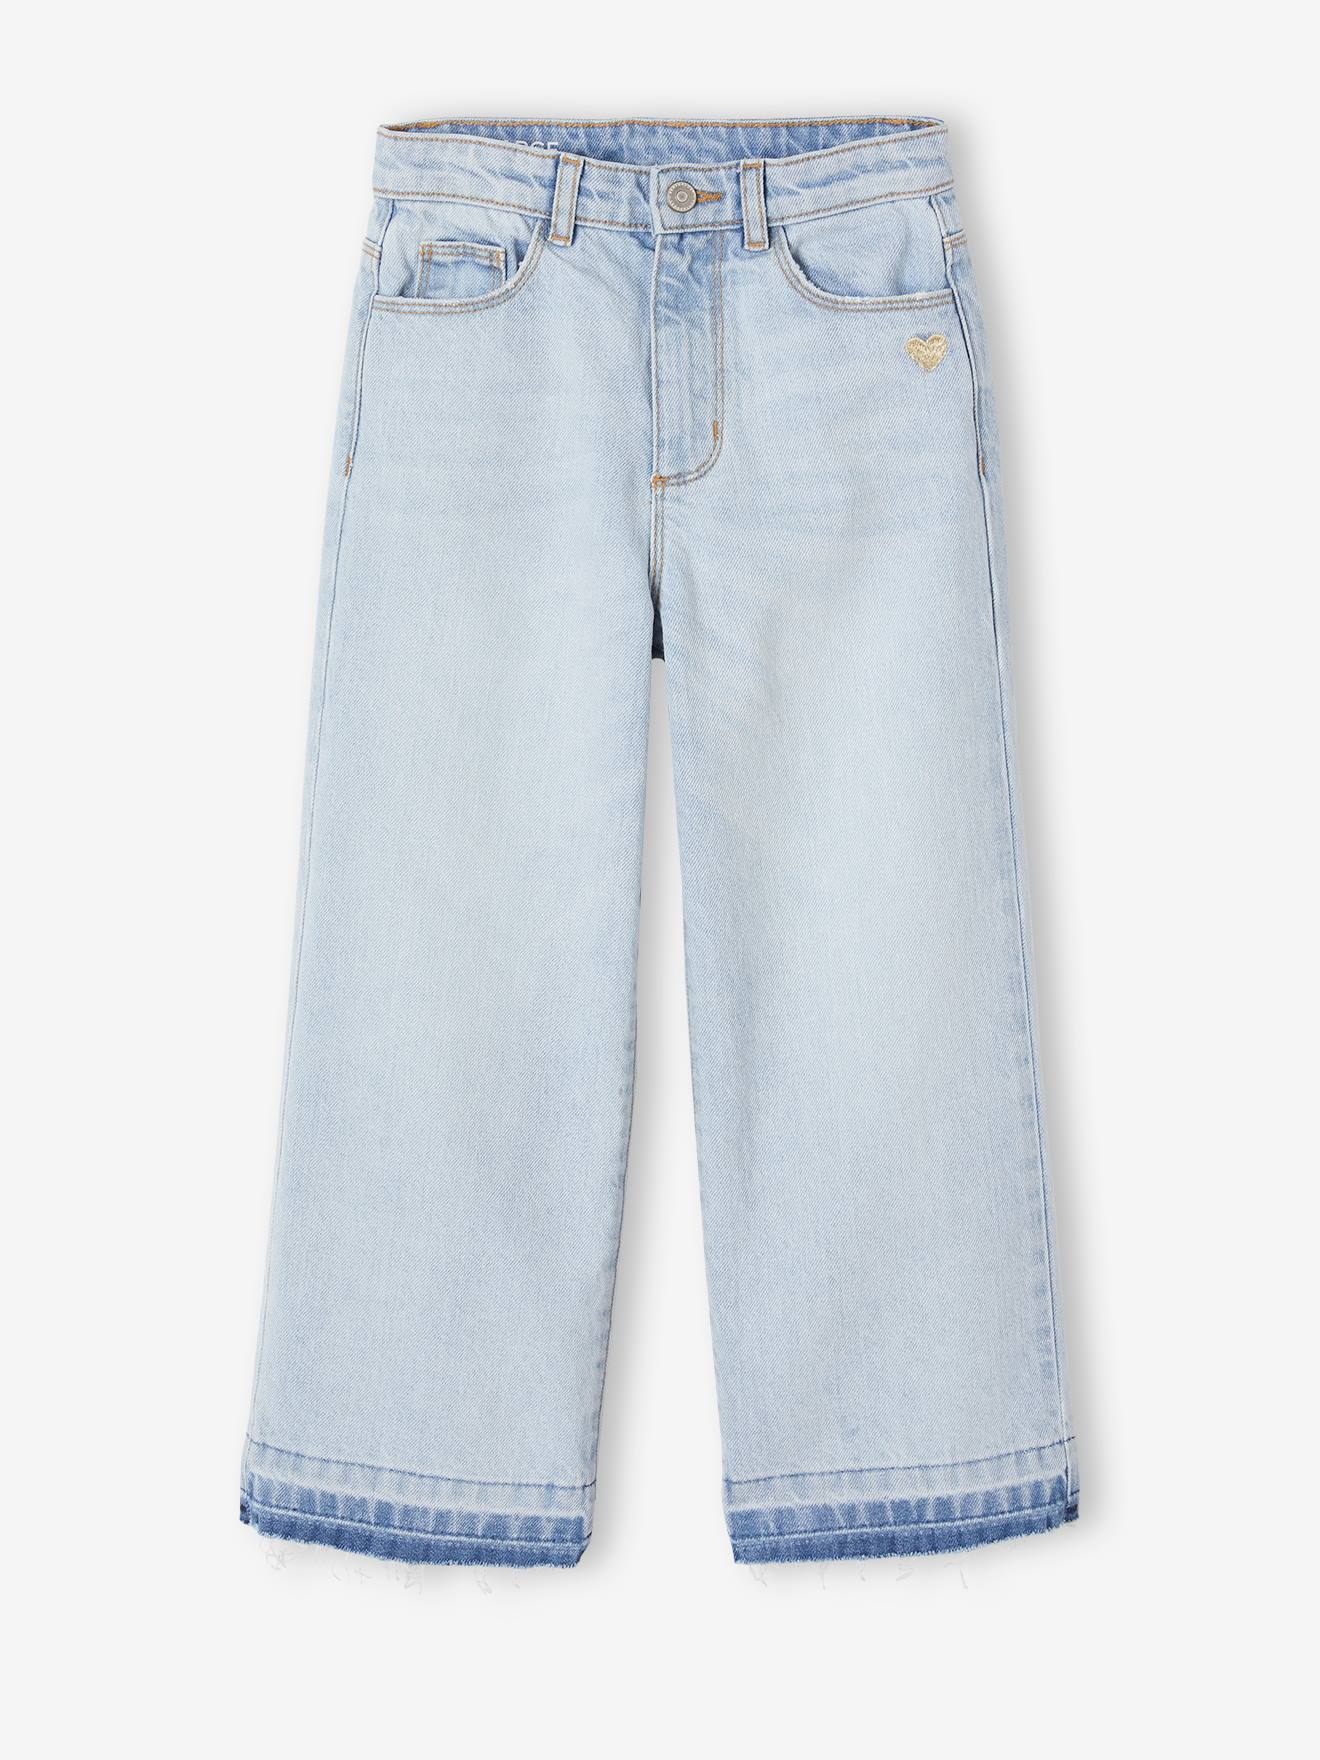 Wide-Leg Jeans, Frayed Hems, for Girls sky blue